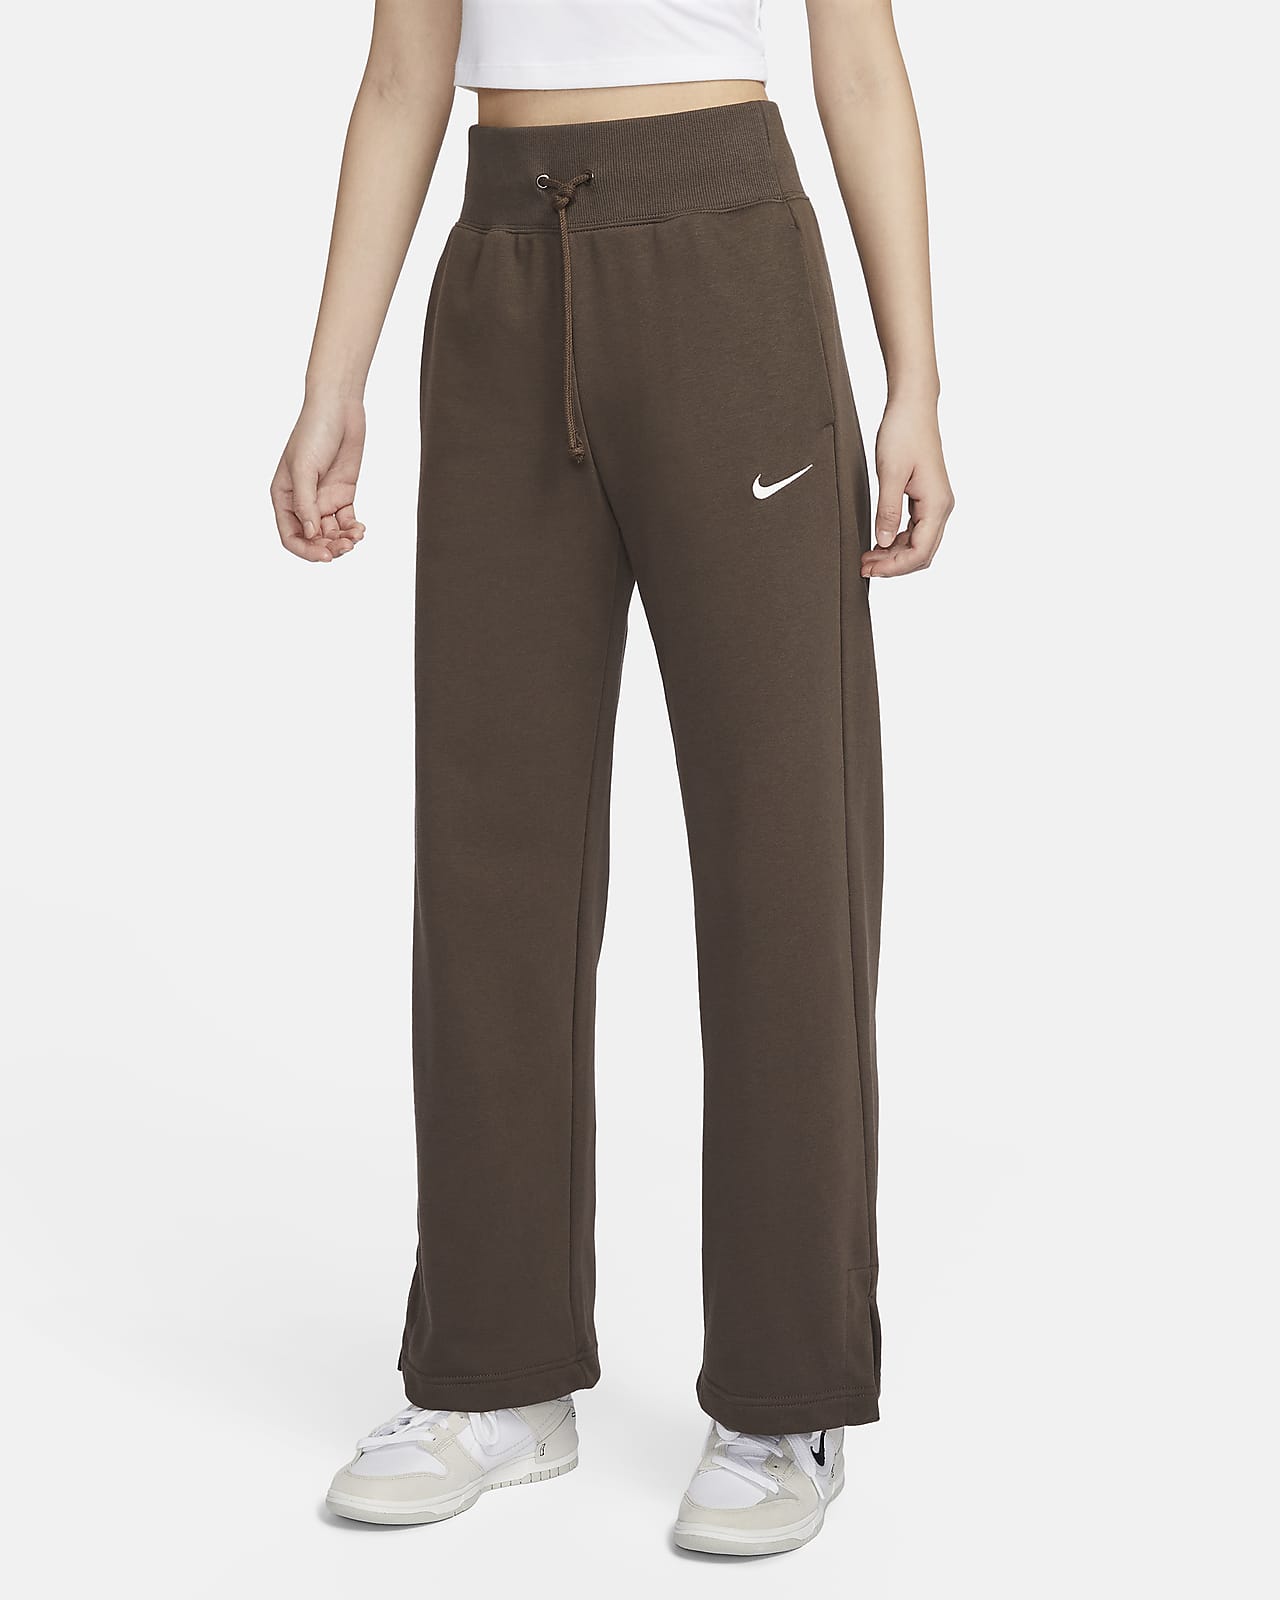 Nike Sportswear Phoenix Fleece 女子高腰法式毛圈阔腿运动裤